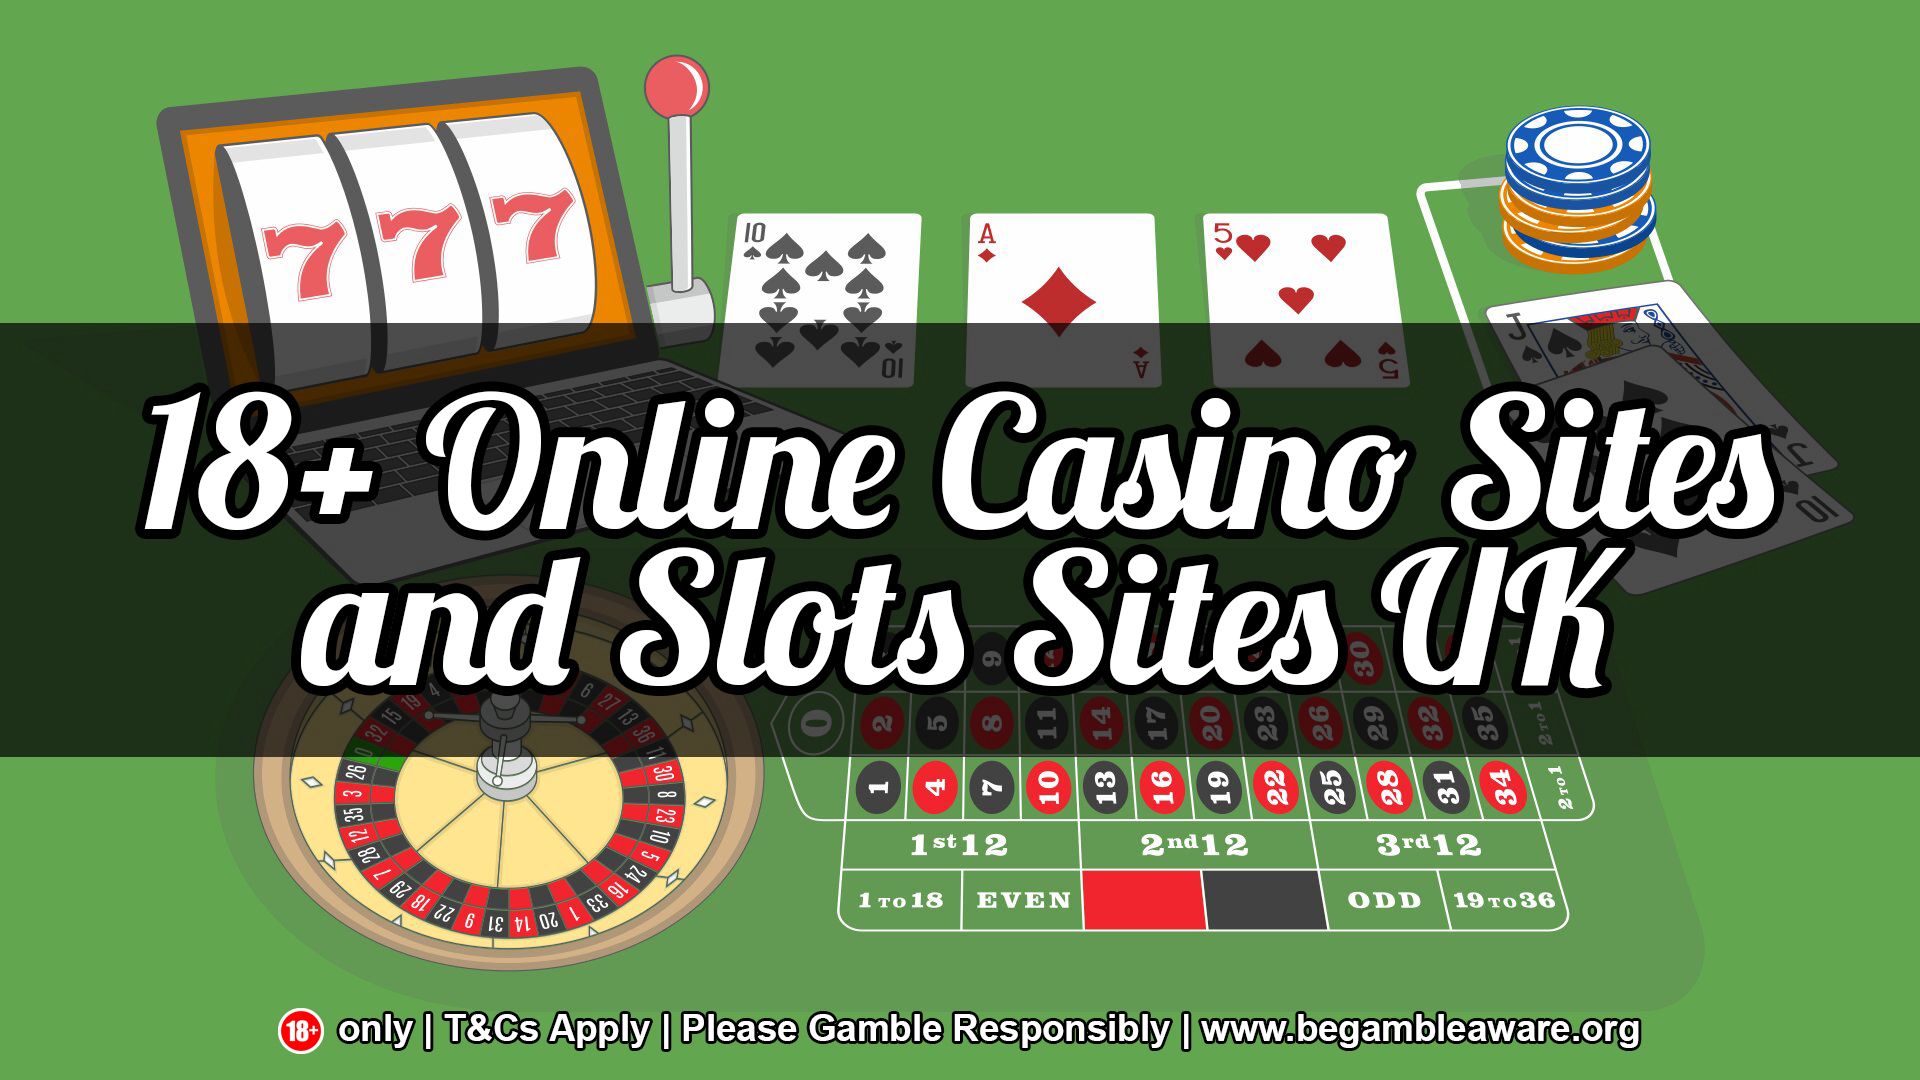 British Gambling Sites